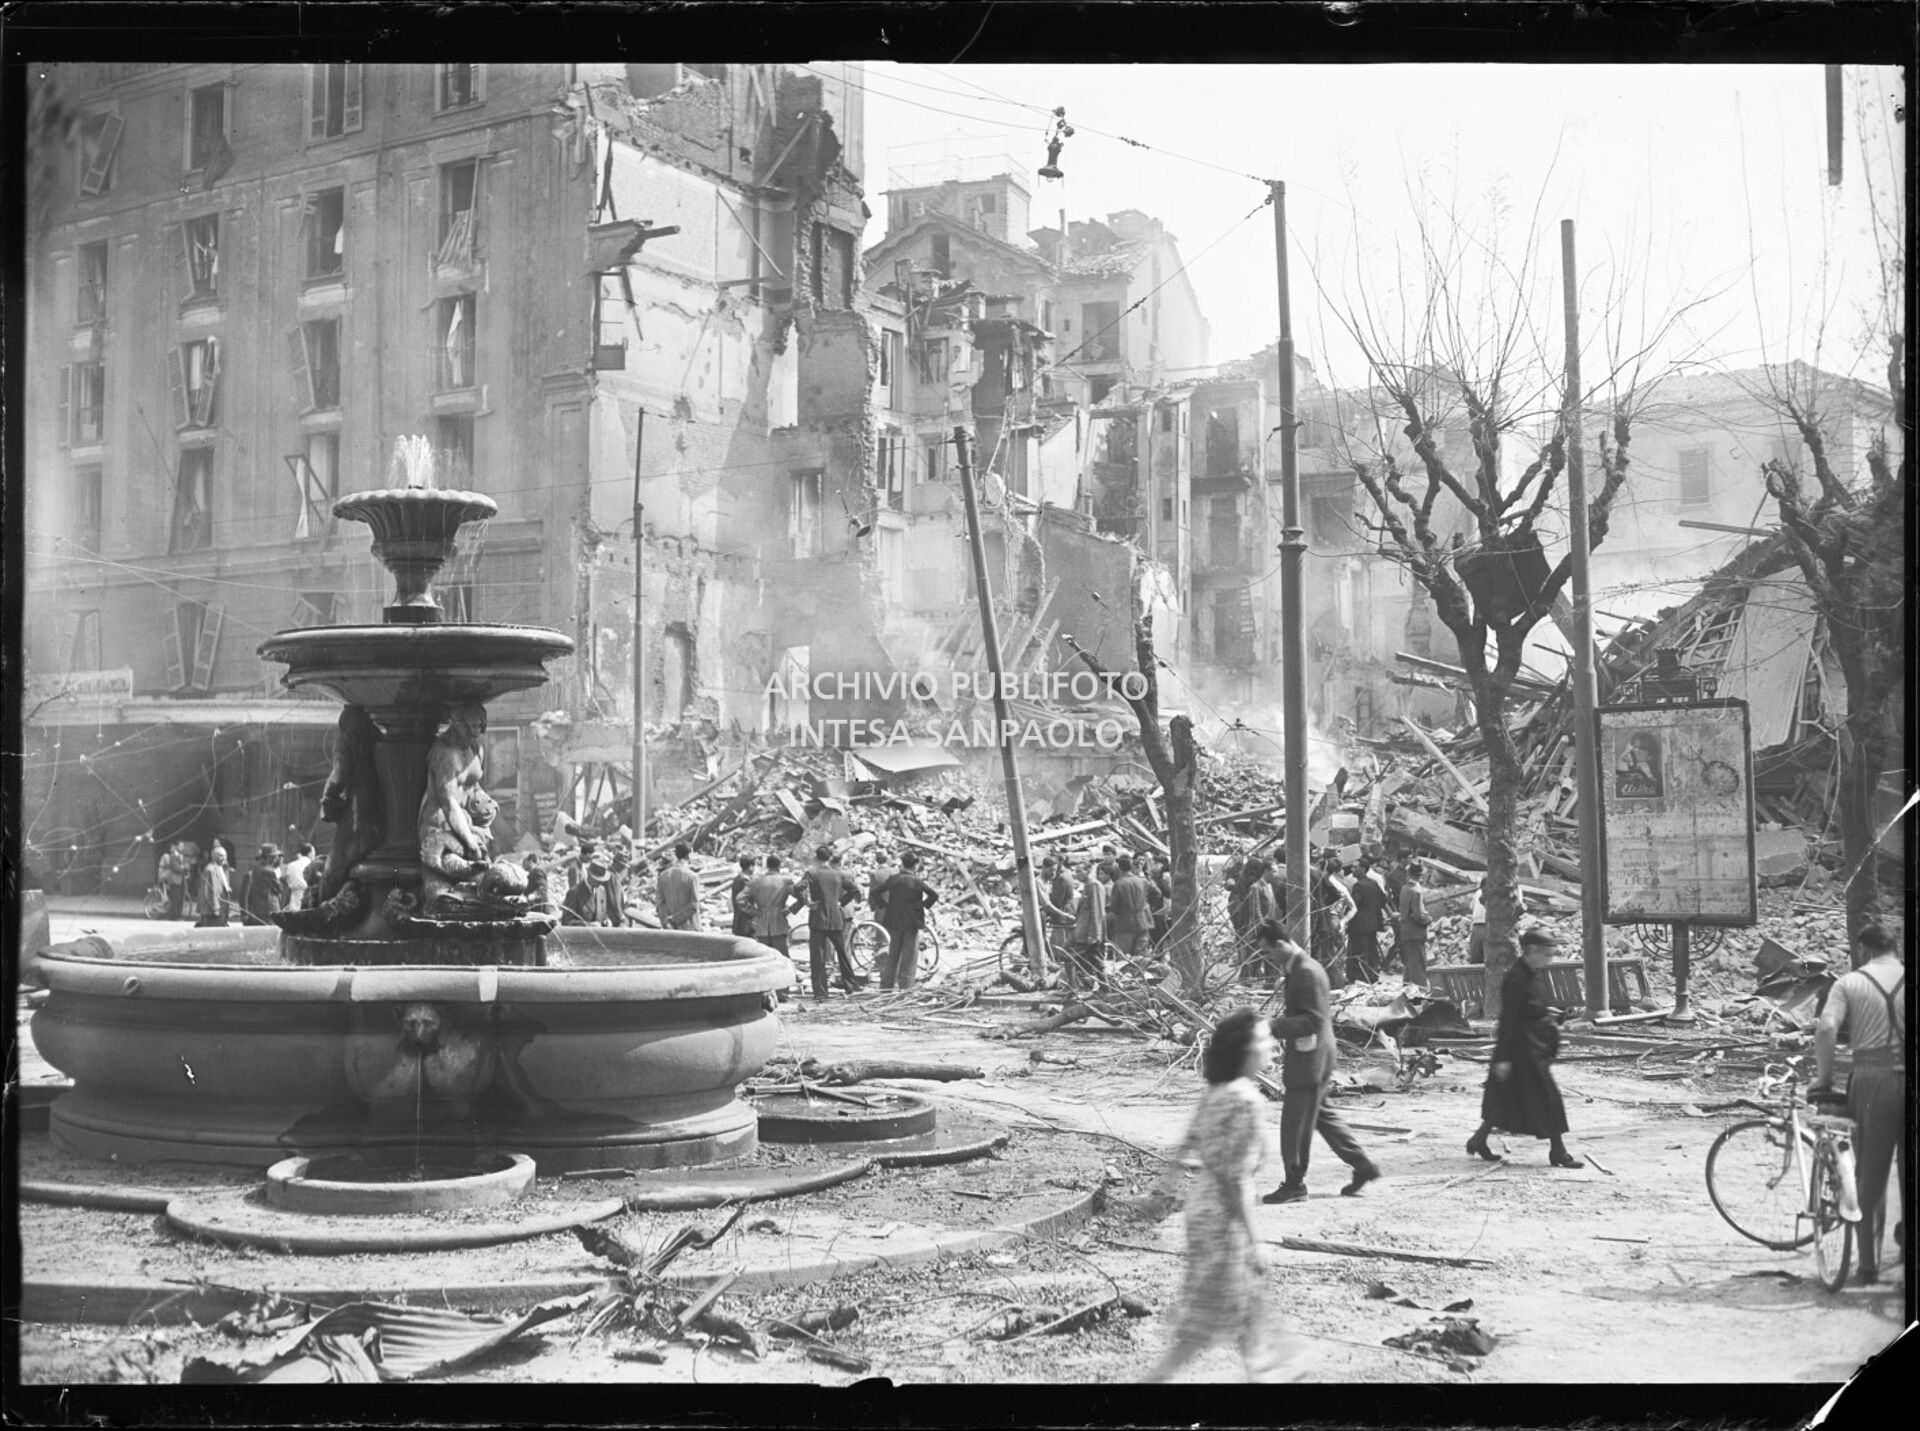 Piazza Fontana a Milano dopo i bombardamenti:  la fontana del Piermarini è miracolosamente intatta, mentre l'area circostante è devastata